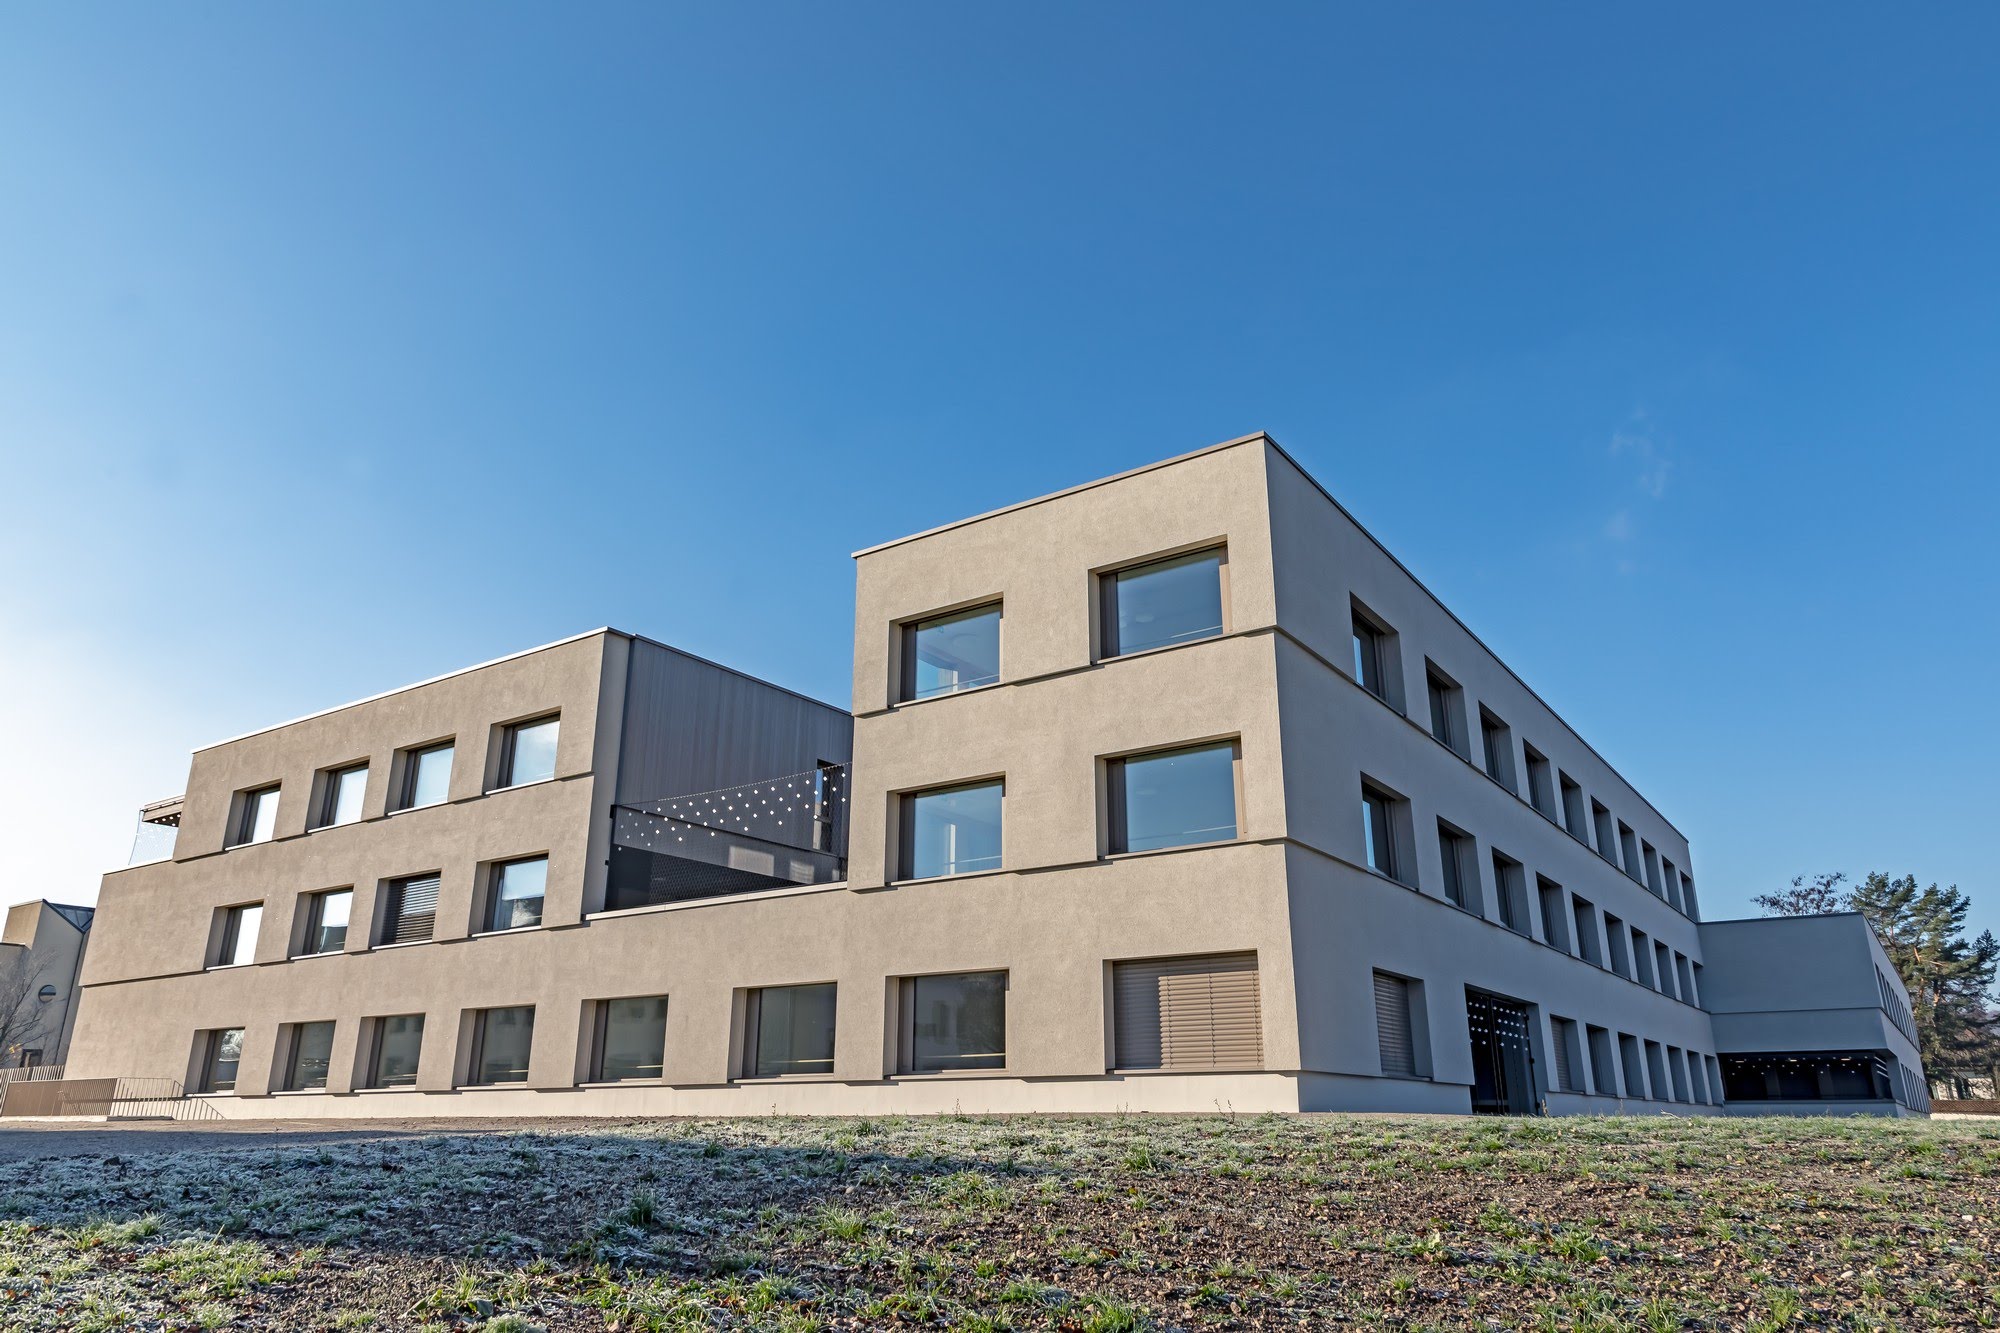 Industrie / Gewerbebau,Aussenwärmedämmung,Öffentliche Bauten Neubau Haus C Luzerner Psychiatrie